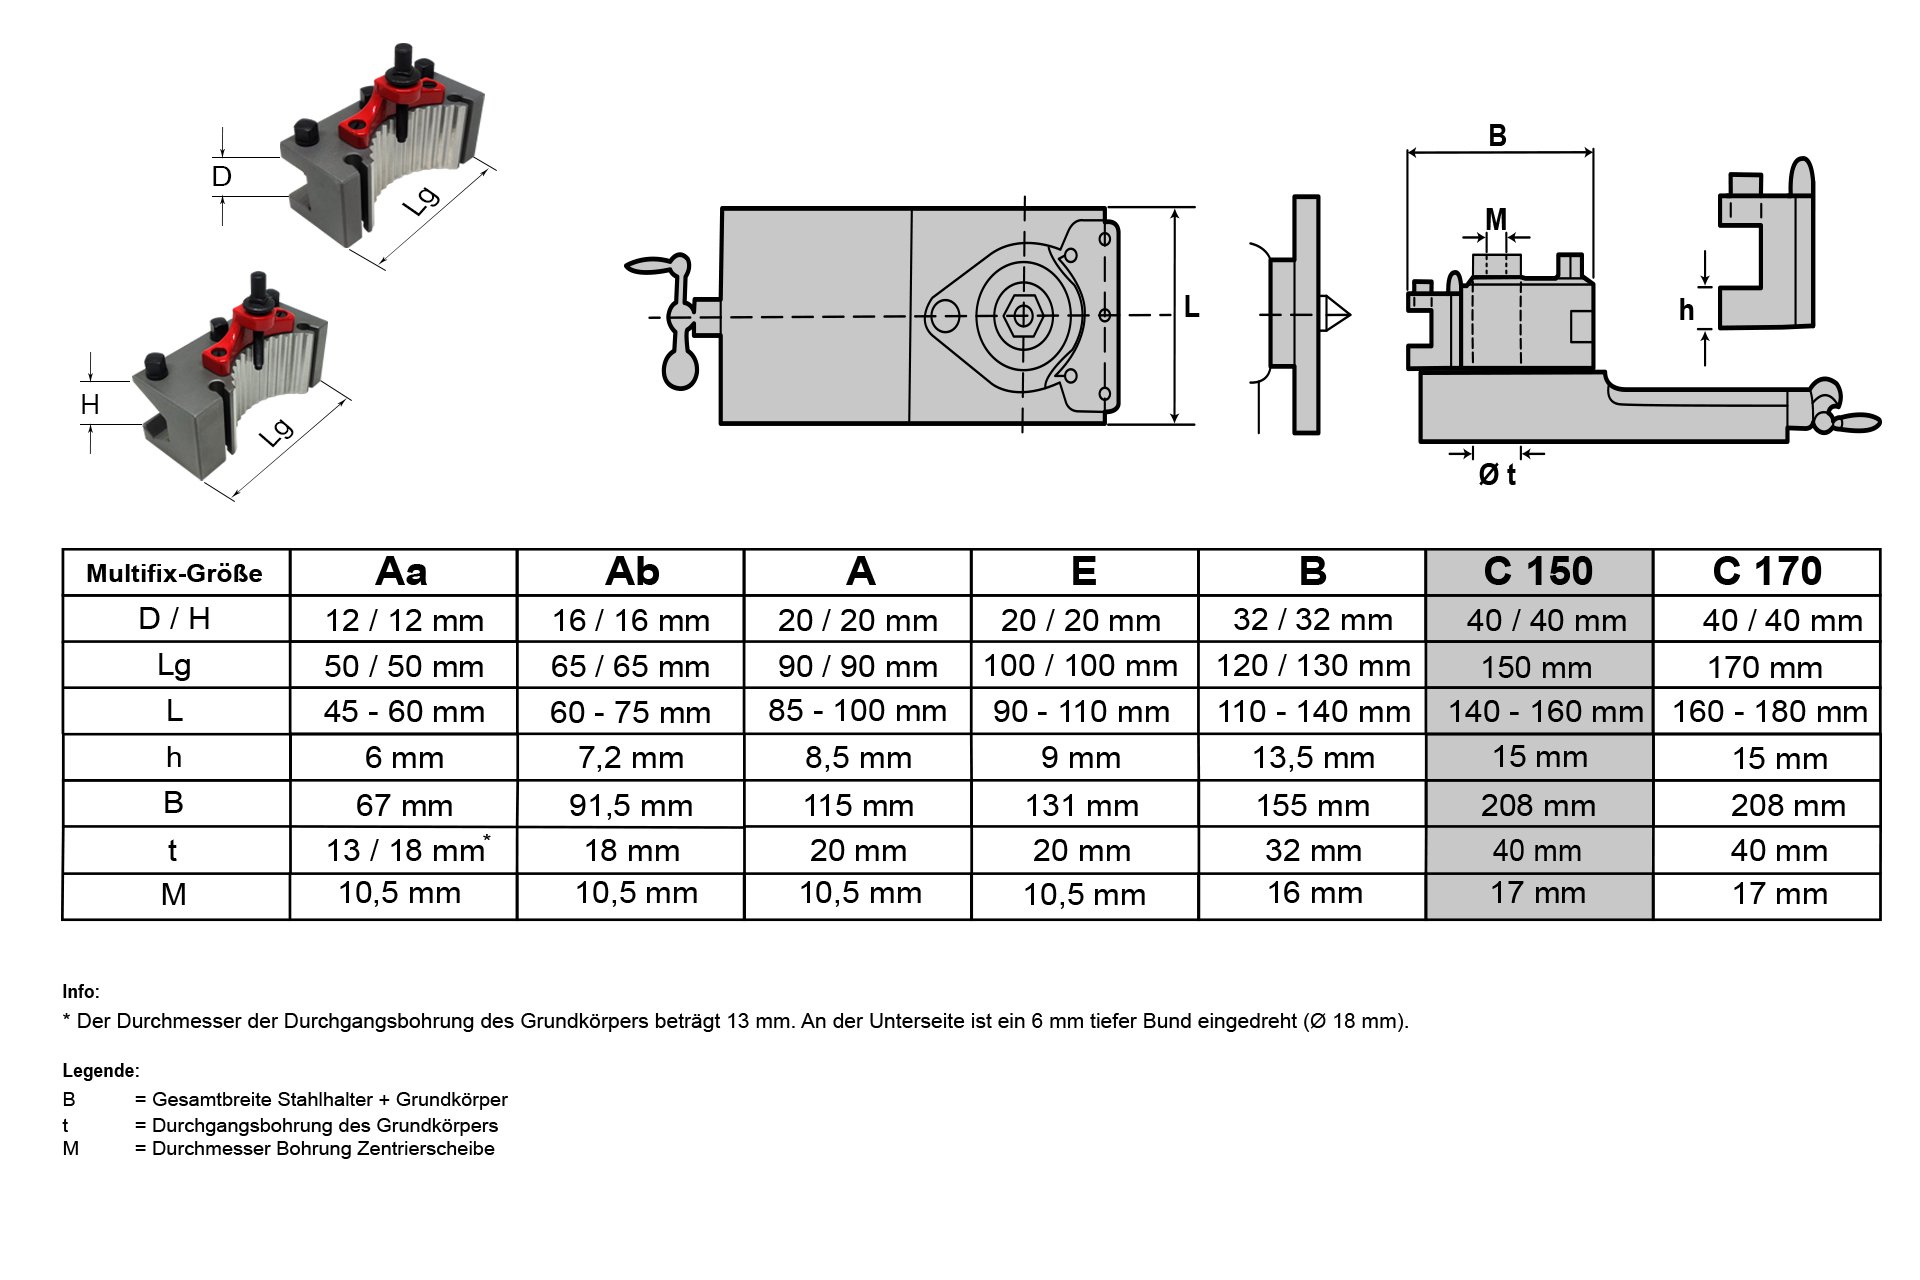 Schnellwechsel-Stahlhalter-Set, System "Multifix", Größe C (CD32150)